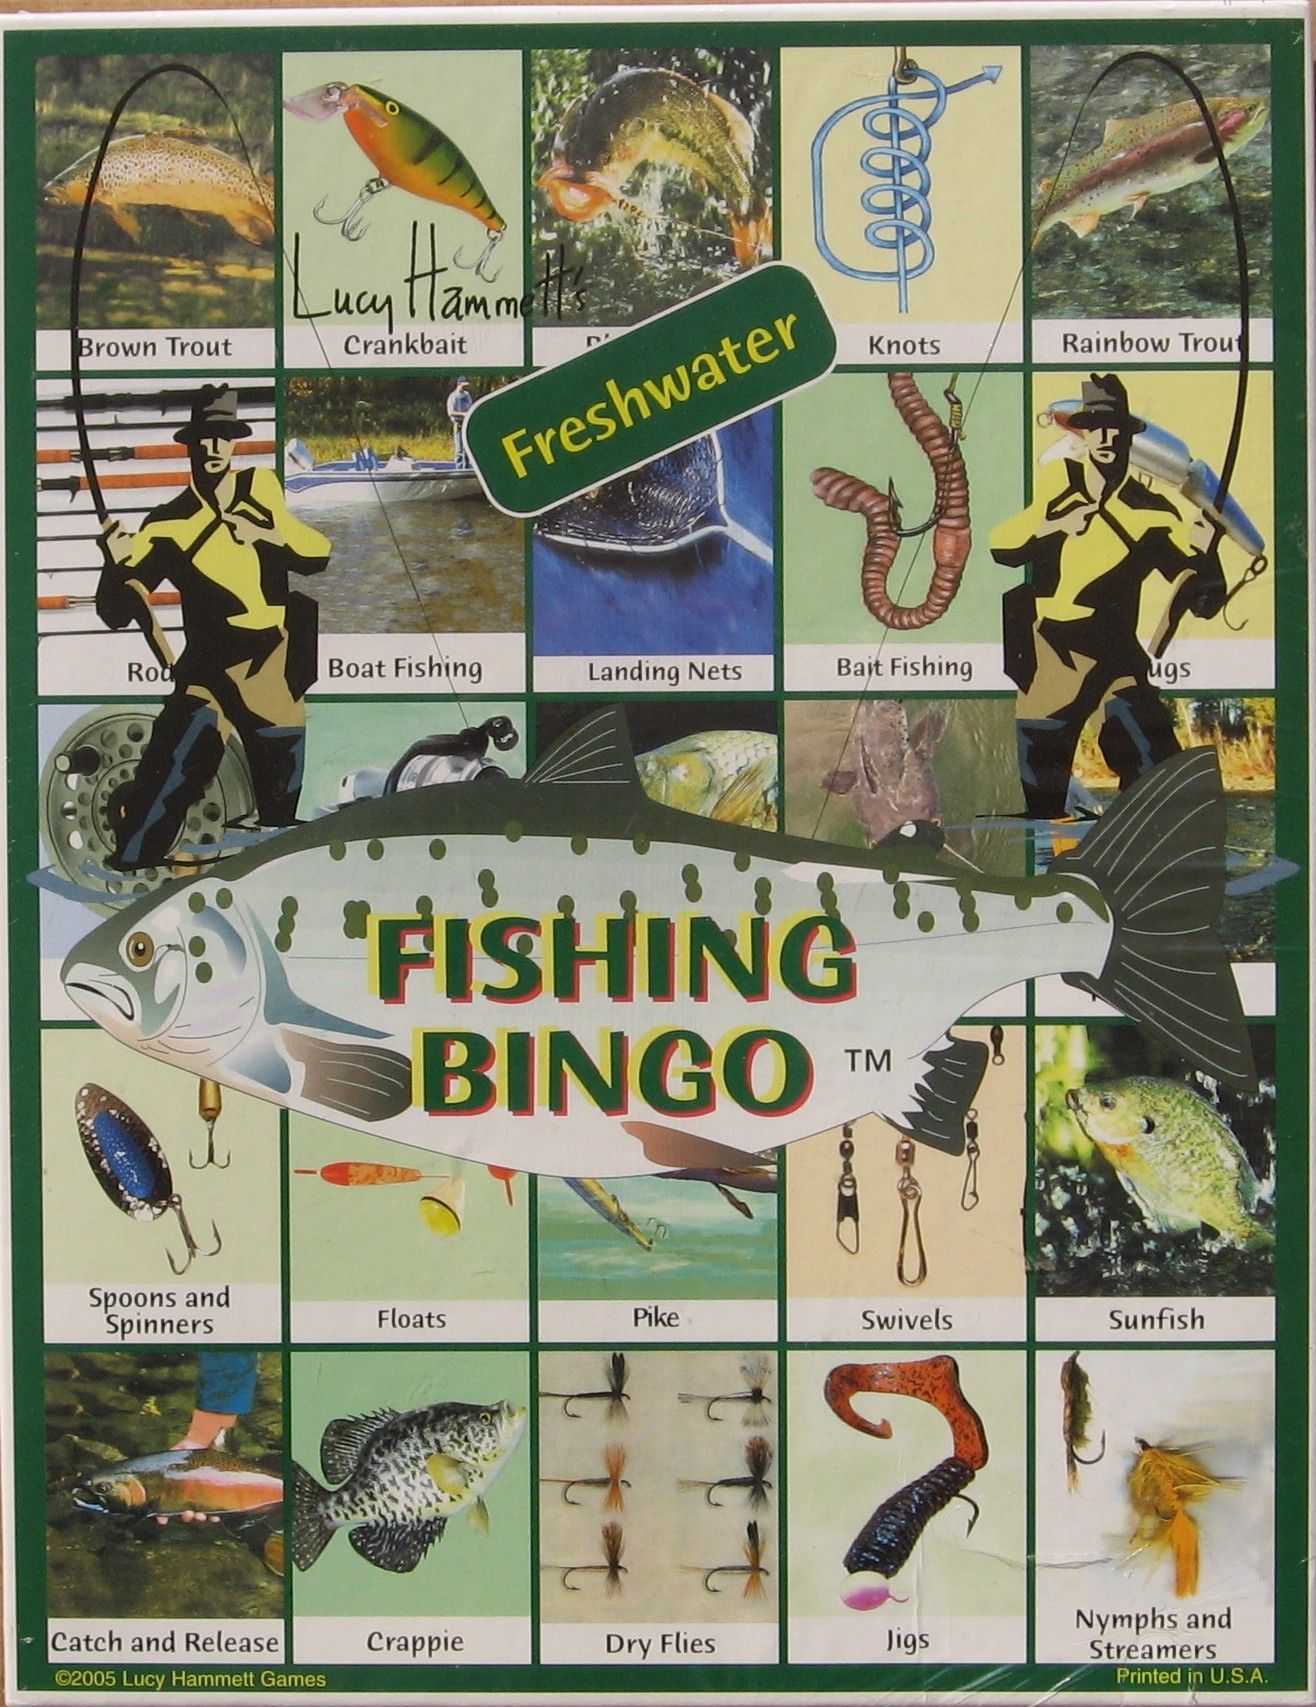 Lucy Hammett's Fishing Bingo